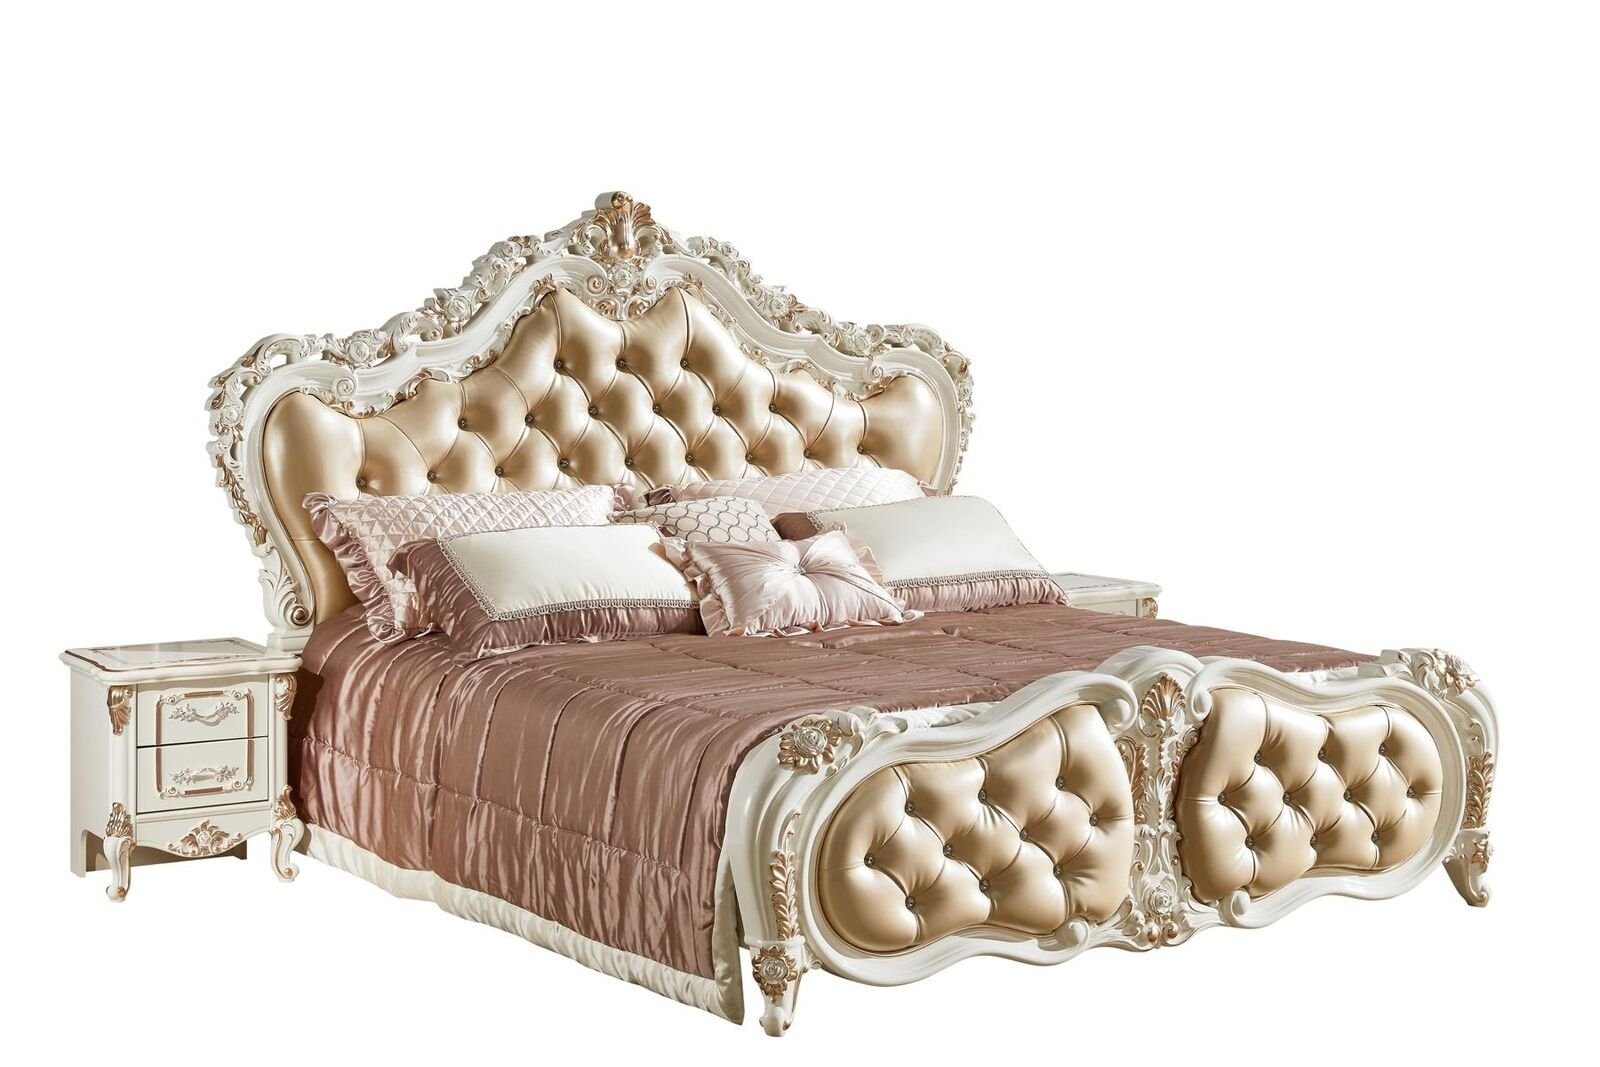 JVmoebel Bett Design Bett Schlafzimmer Mit Chesterfield Holzschnitzerei, Einrichtung Betten (Nur Bett), Möbel Chesterfield-Knöpfen Beige